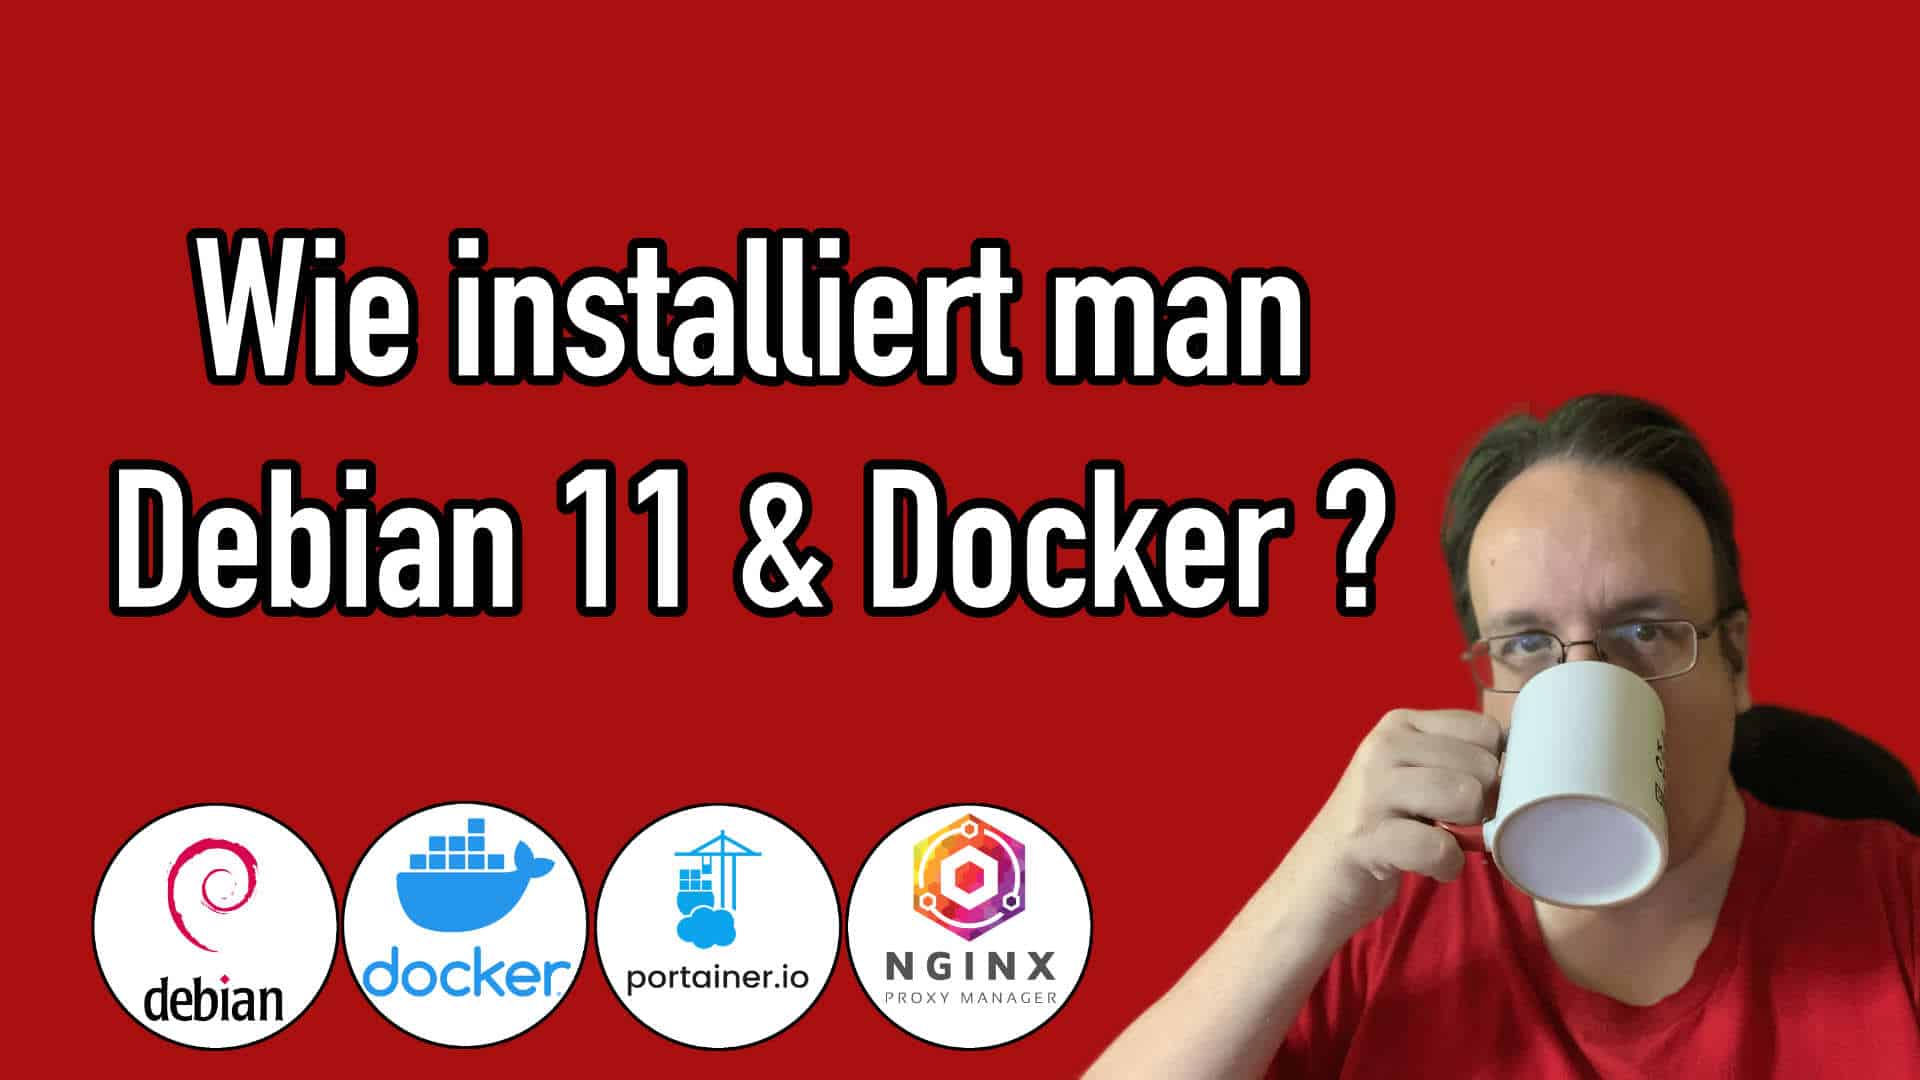 Wie installiert man einen Server mit Debian und Docker?